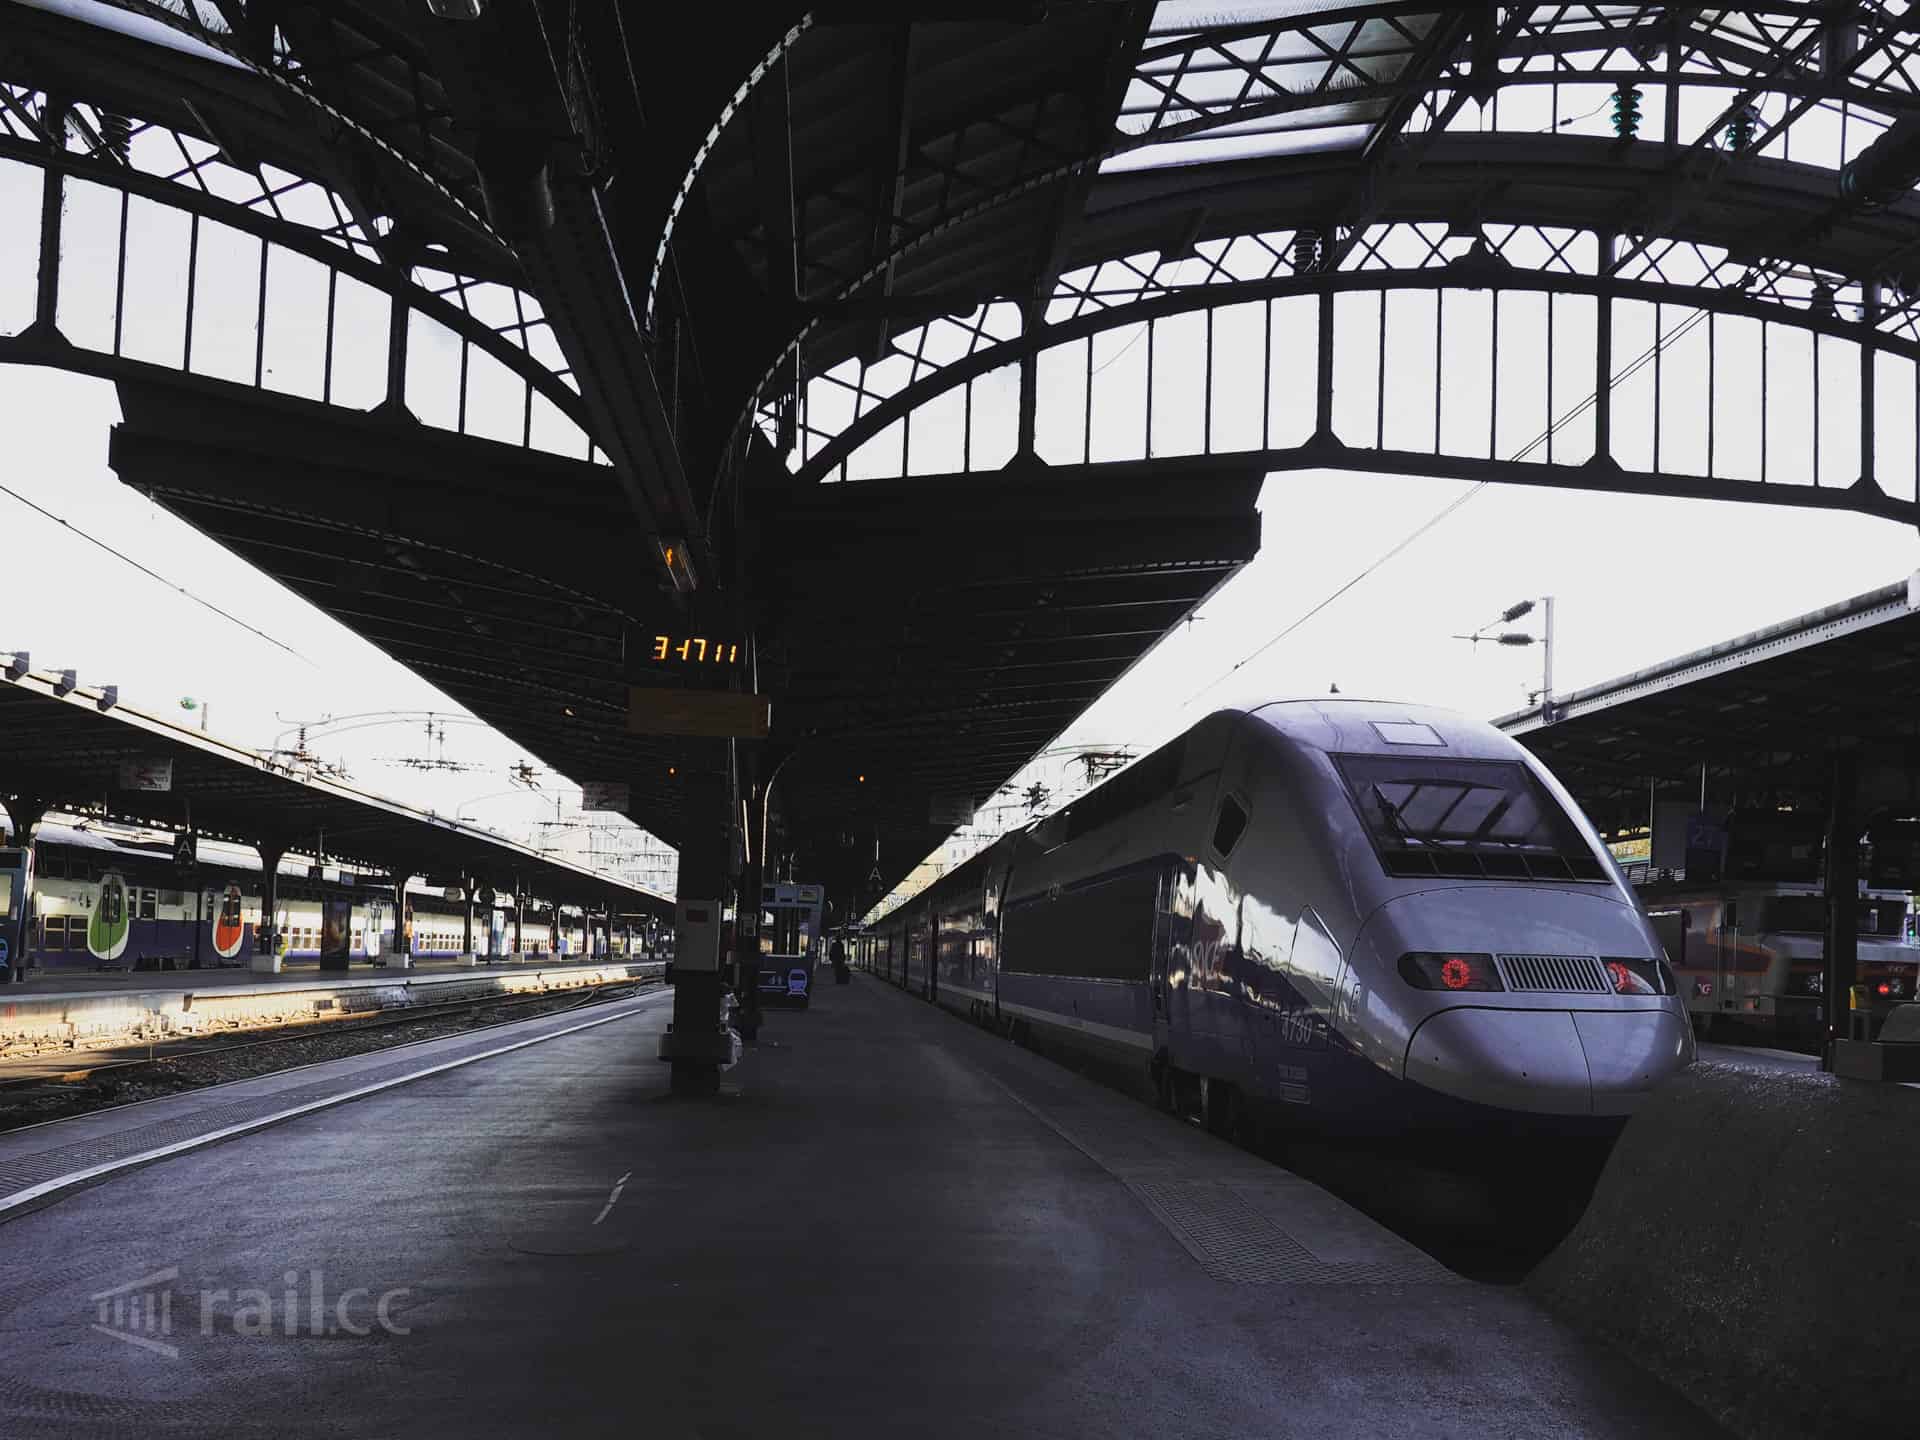 last train to paris review